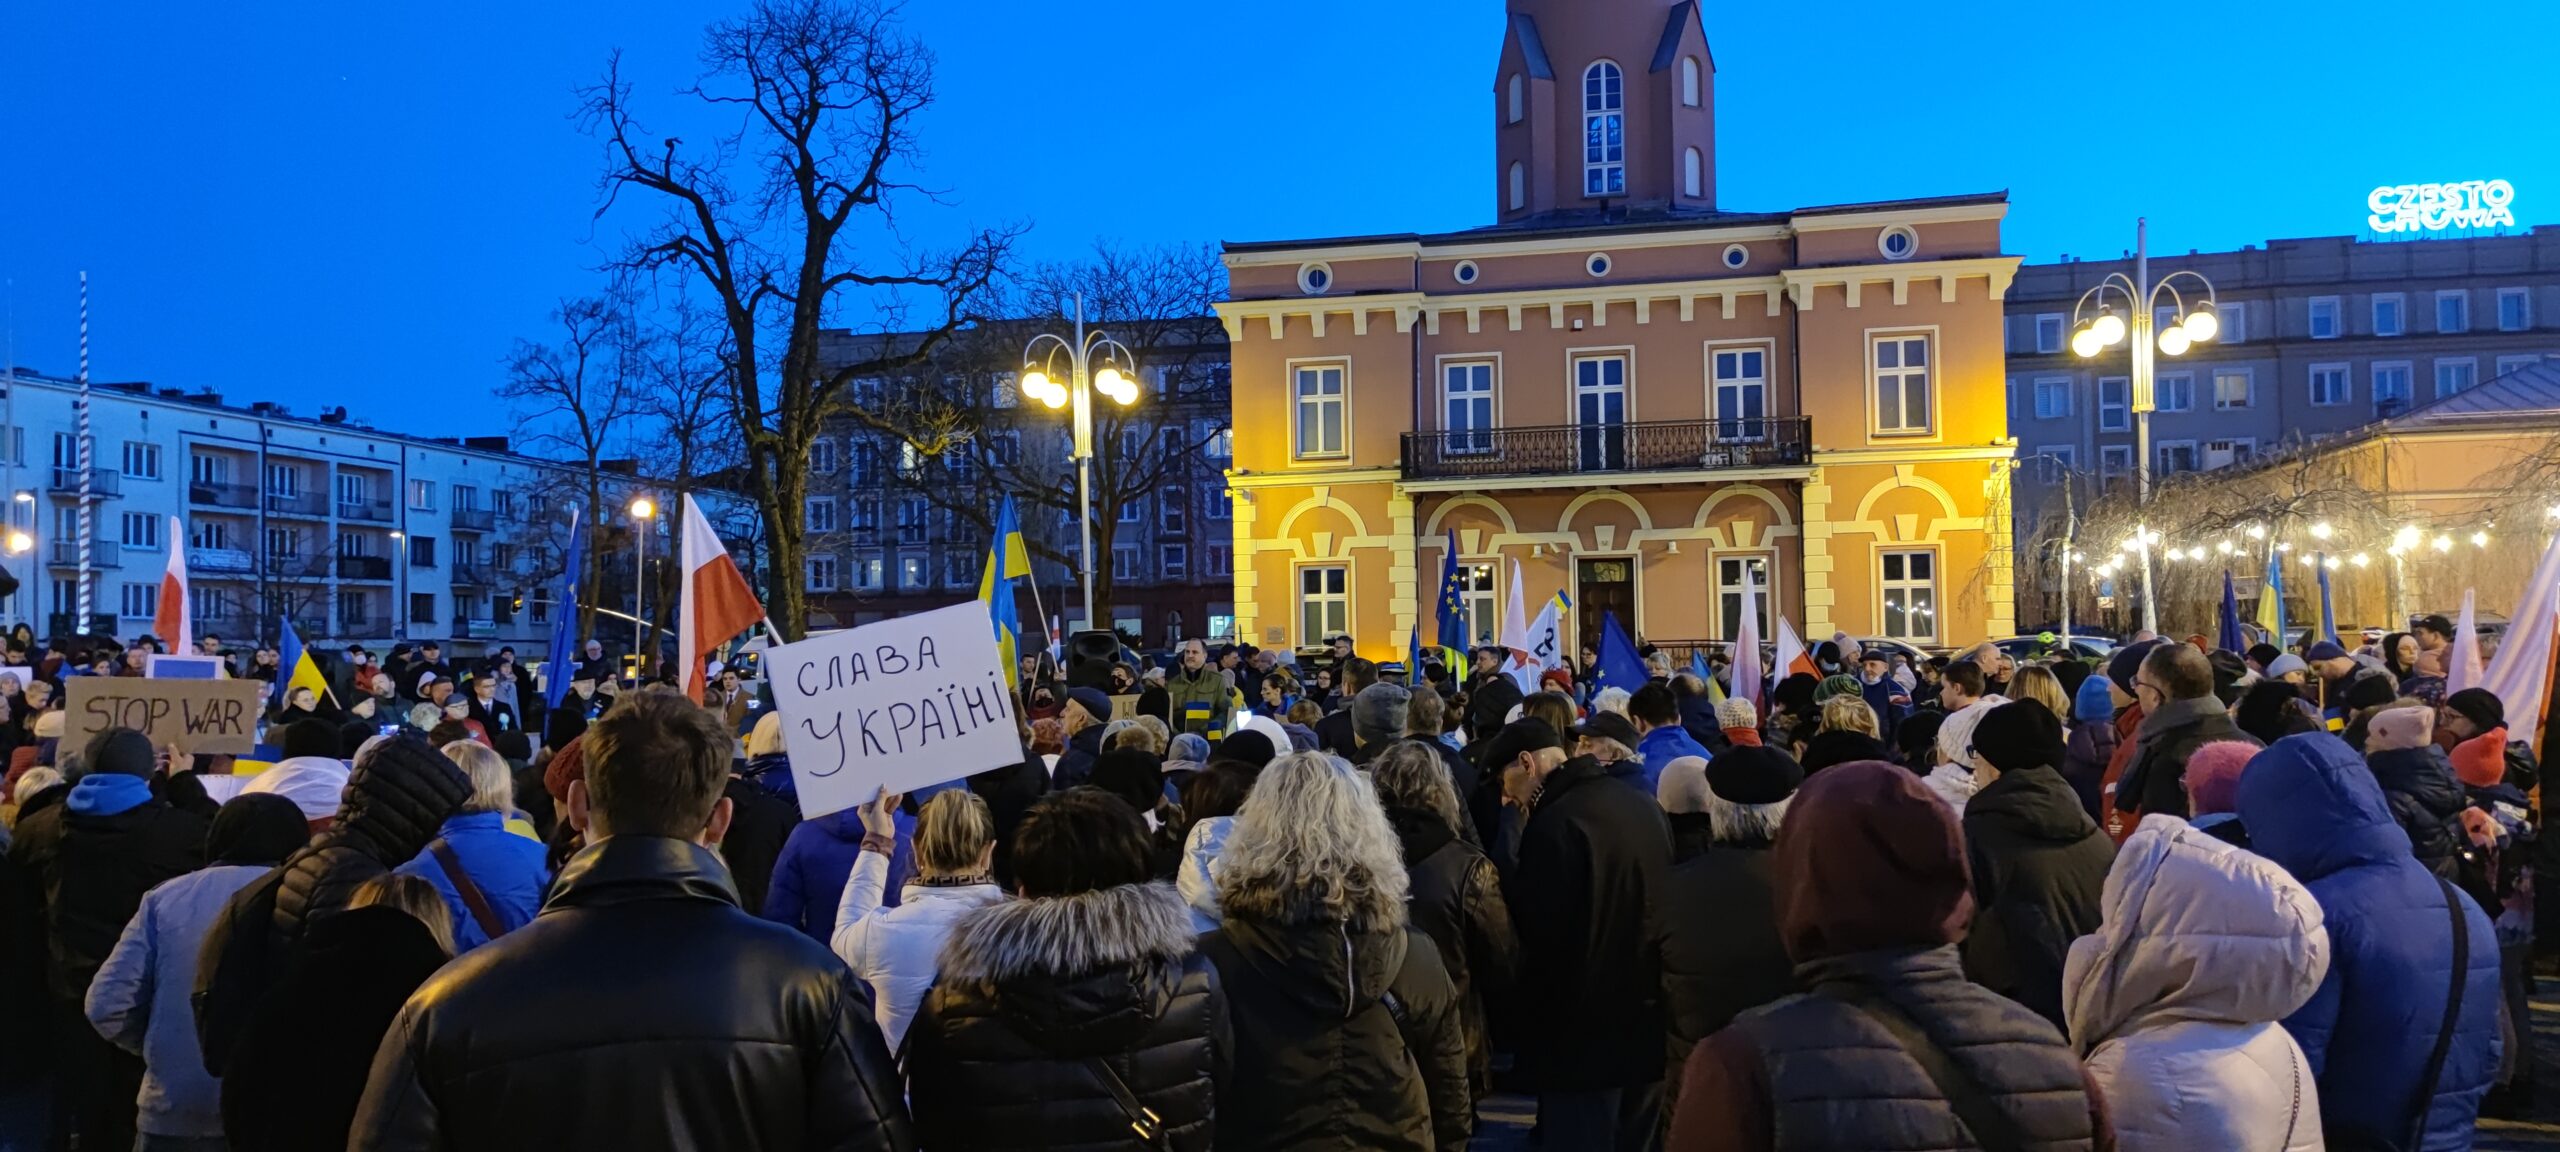 Częstochowski manifest solidarności z Ukrainą. "Precz z Putinem!" - wołano tłumnie na pl. Biegańskiego 9